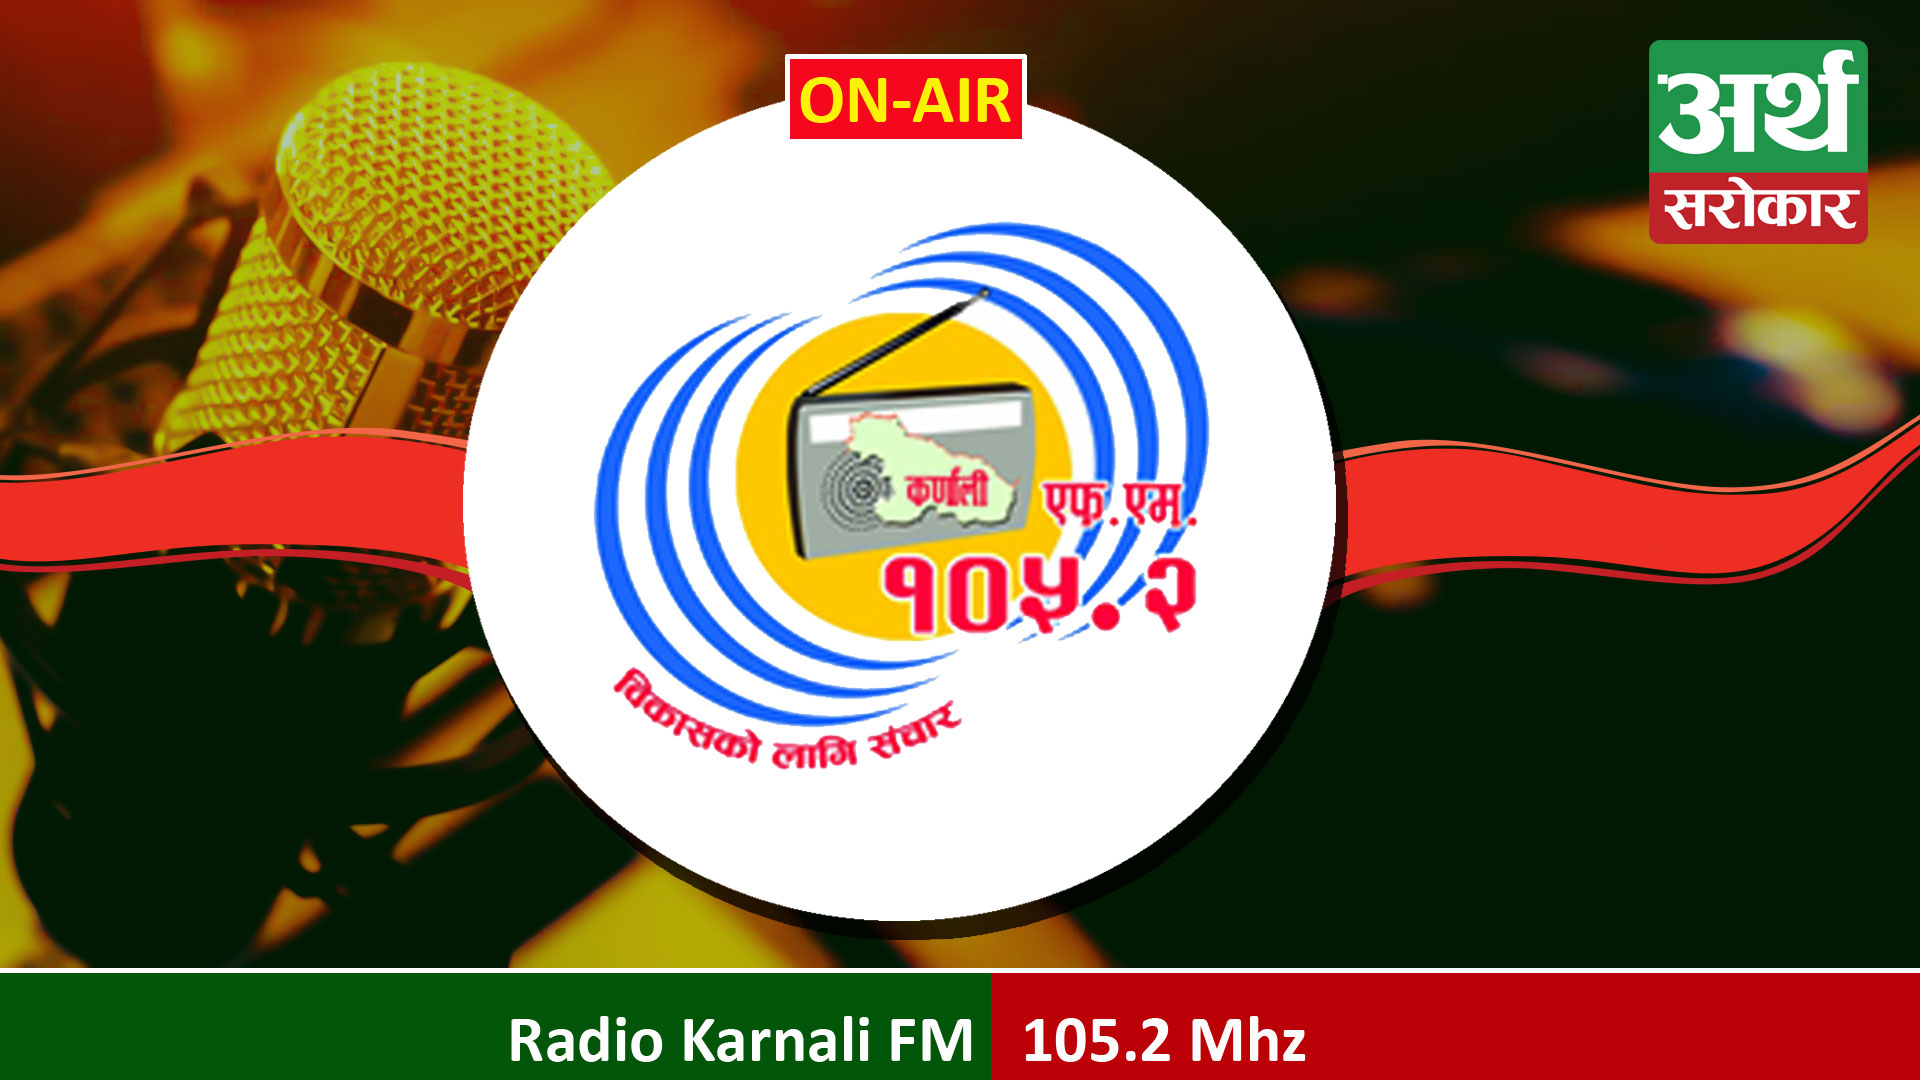 Radio Karnali FM 105.2 Mhz